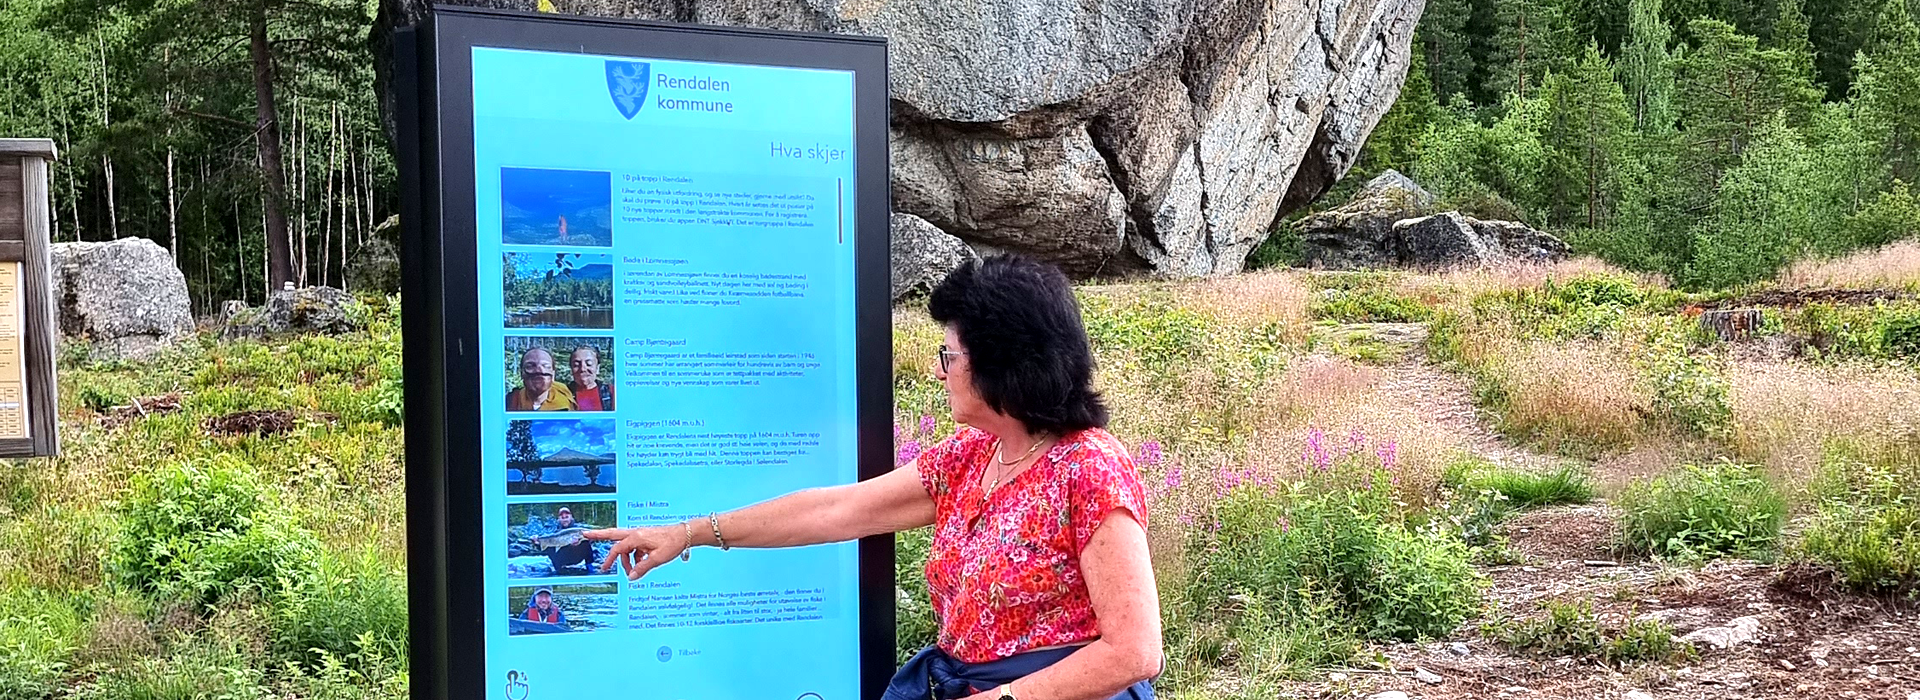 Procon DigitalTurist gir spennende informasjon til besøkende og innbyggere i Rendalen